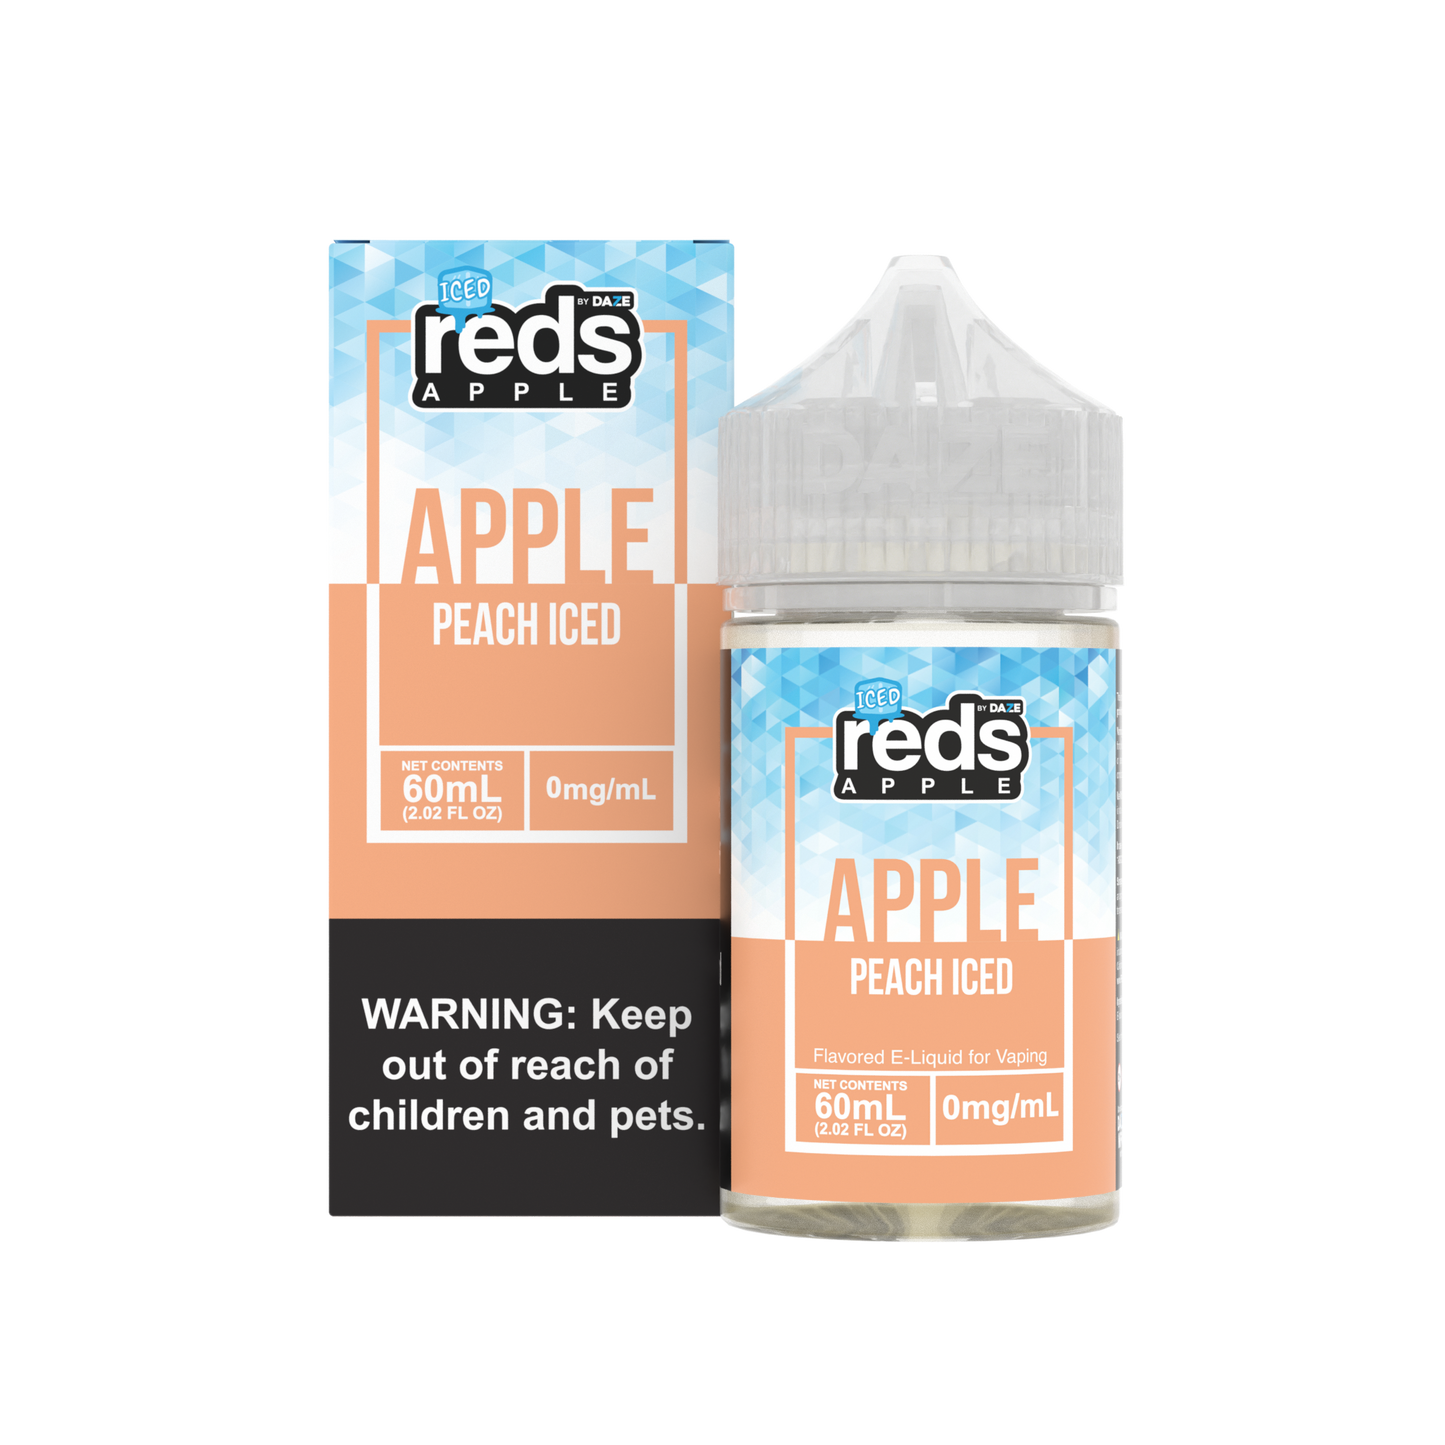 Reds: Apple Peach Iced